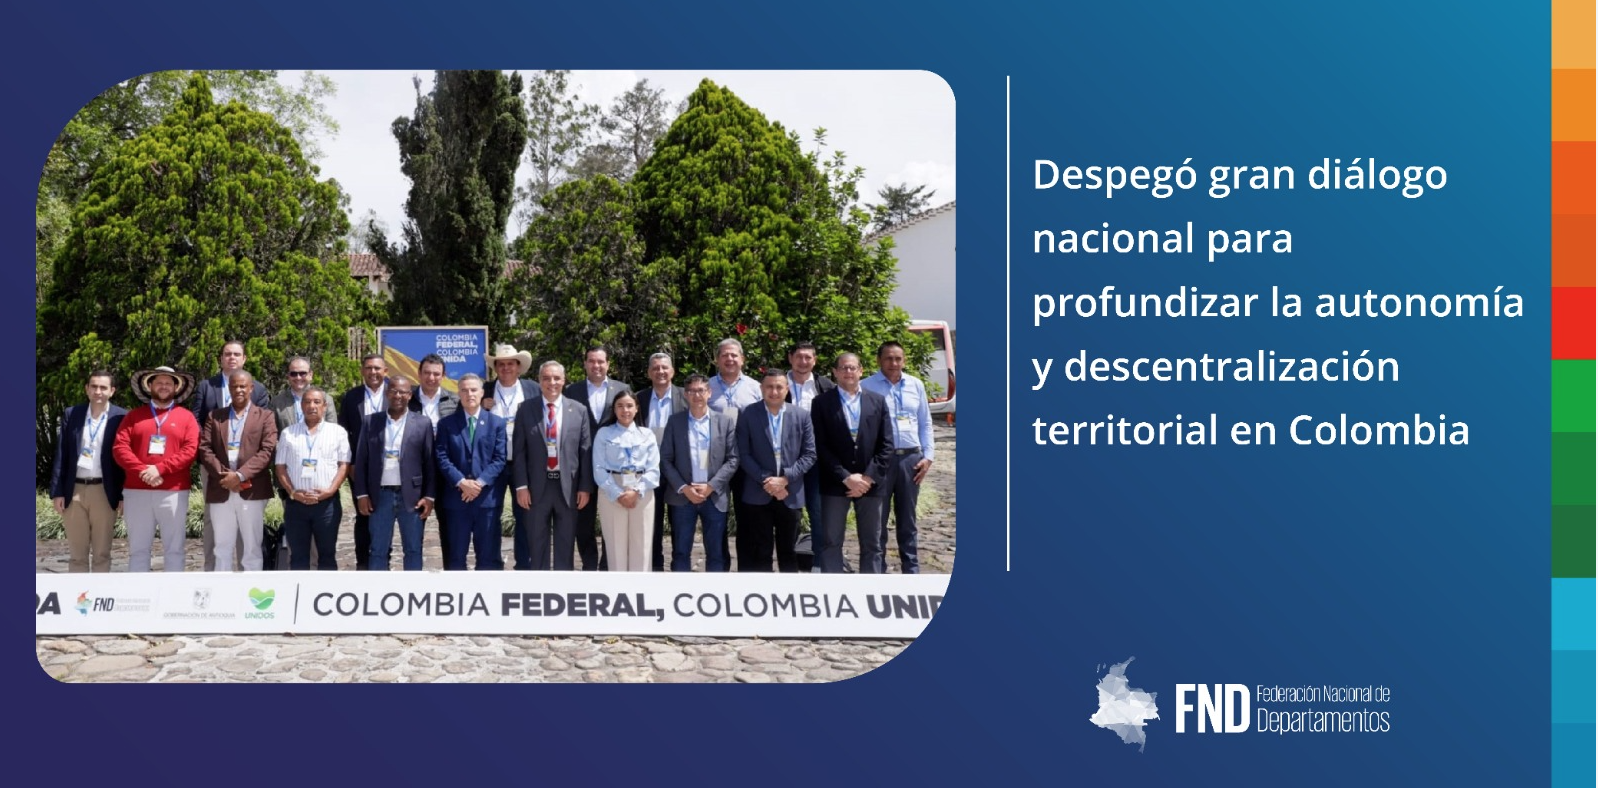 image Despegó gran diálogo nacional para profundizar la autonomía y descentralización territorial en Colombia